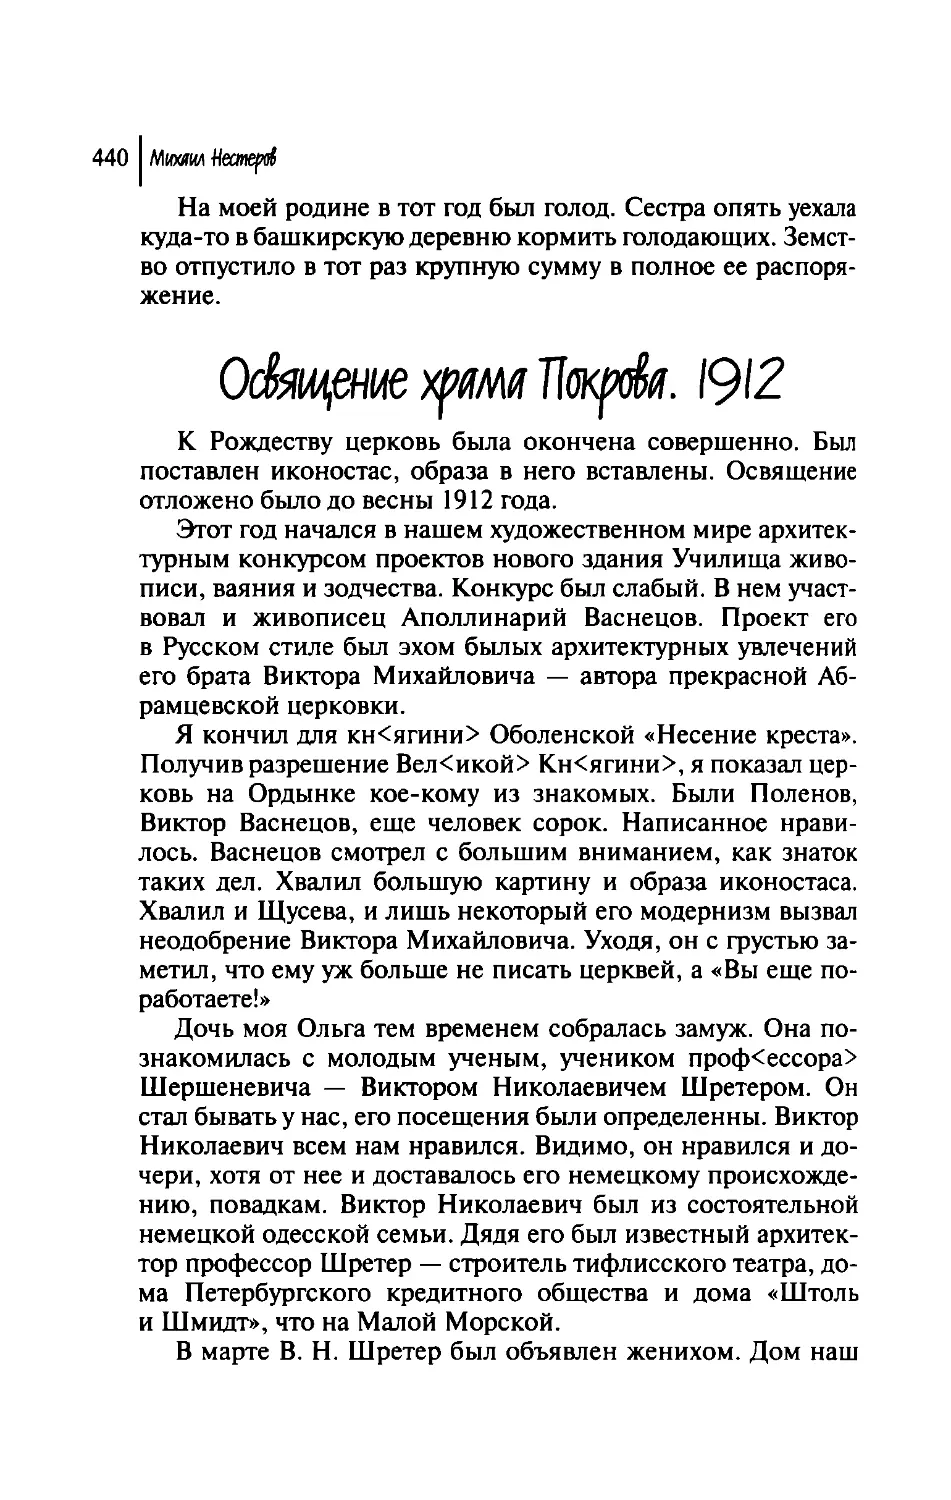 Освящение храма Покрова. 1912